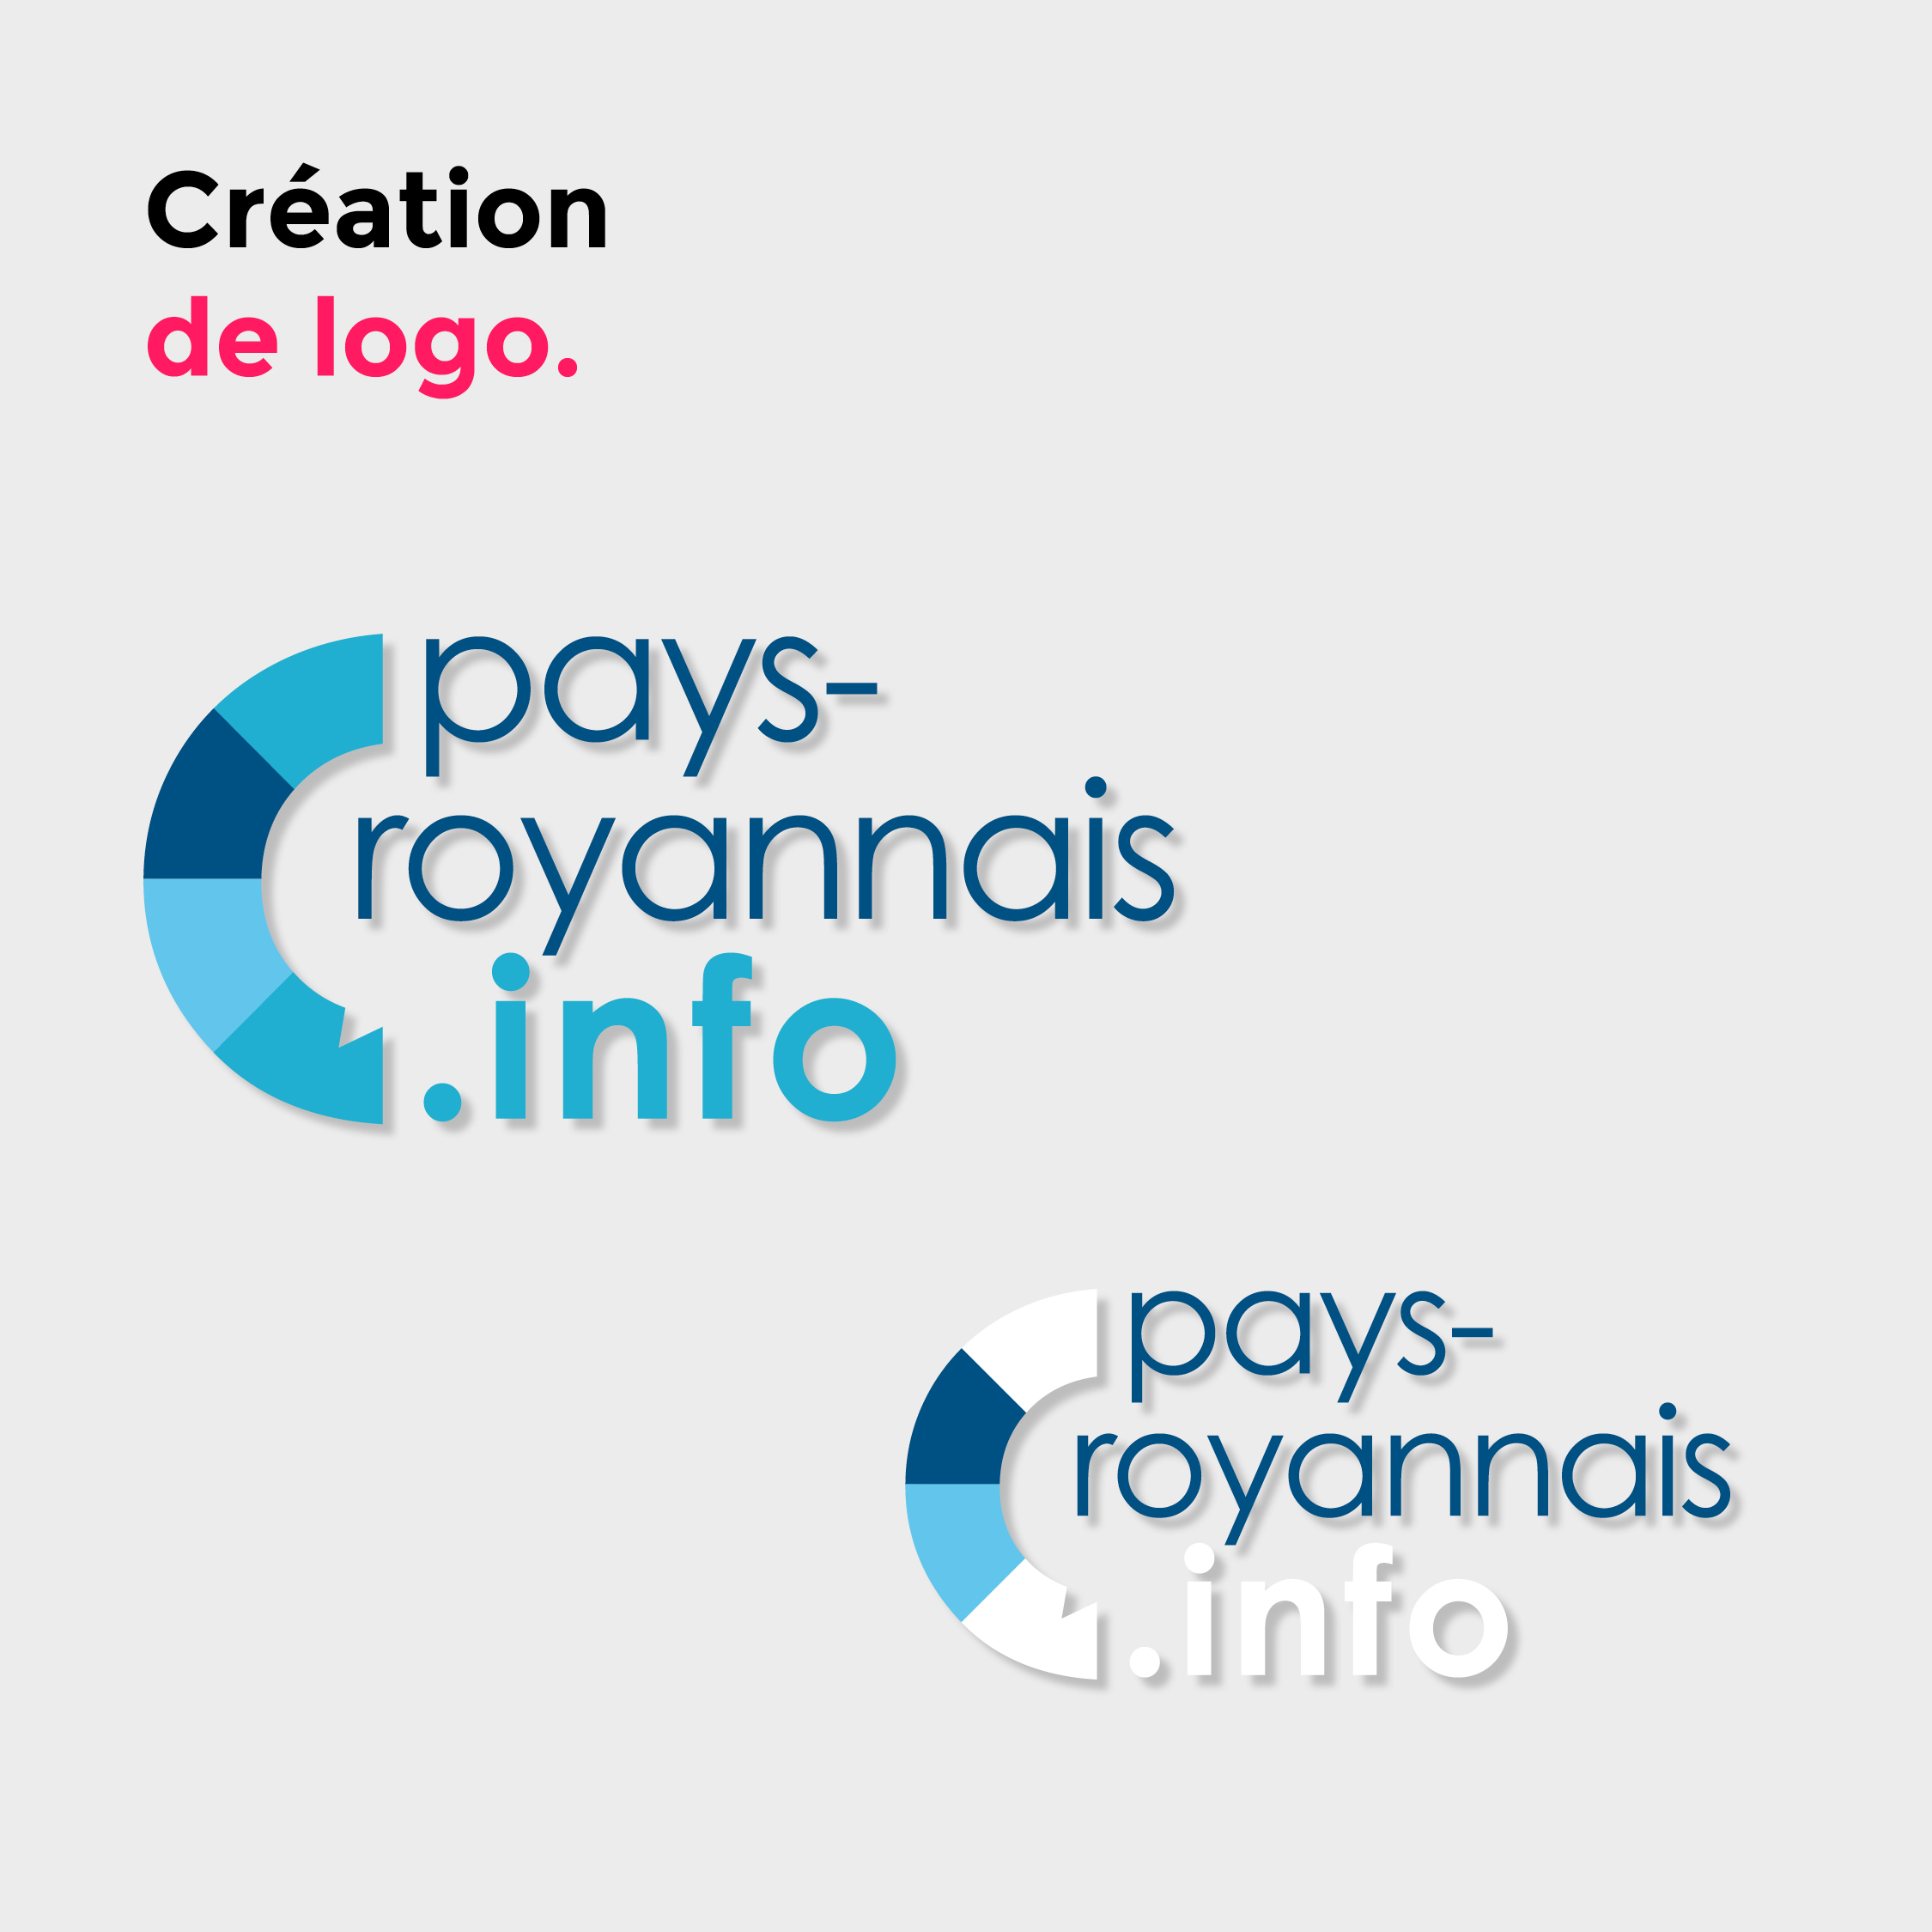 carre gris avec presentation de deux logos pays royannais avec des couleurs differentes tels que plusieurs bleus